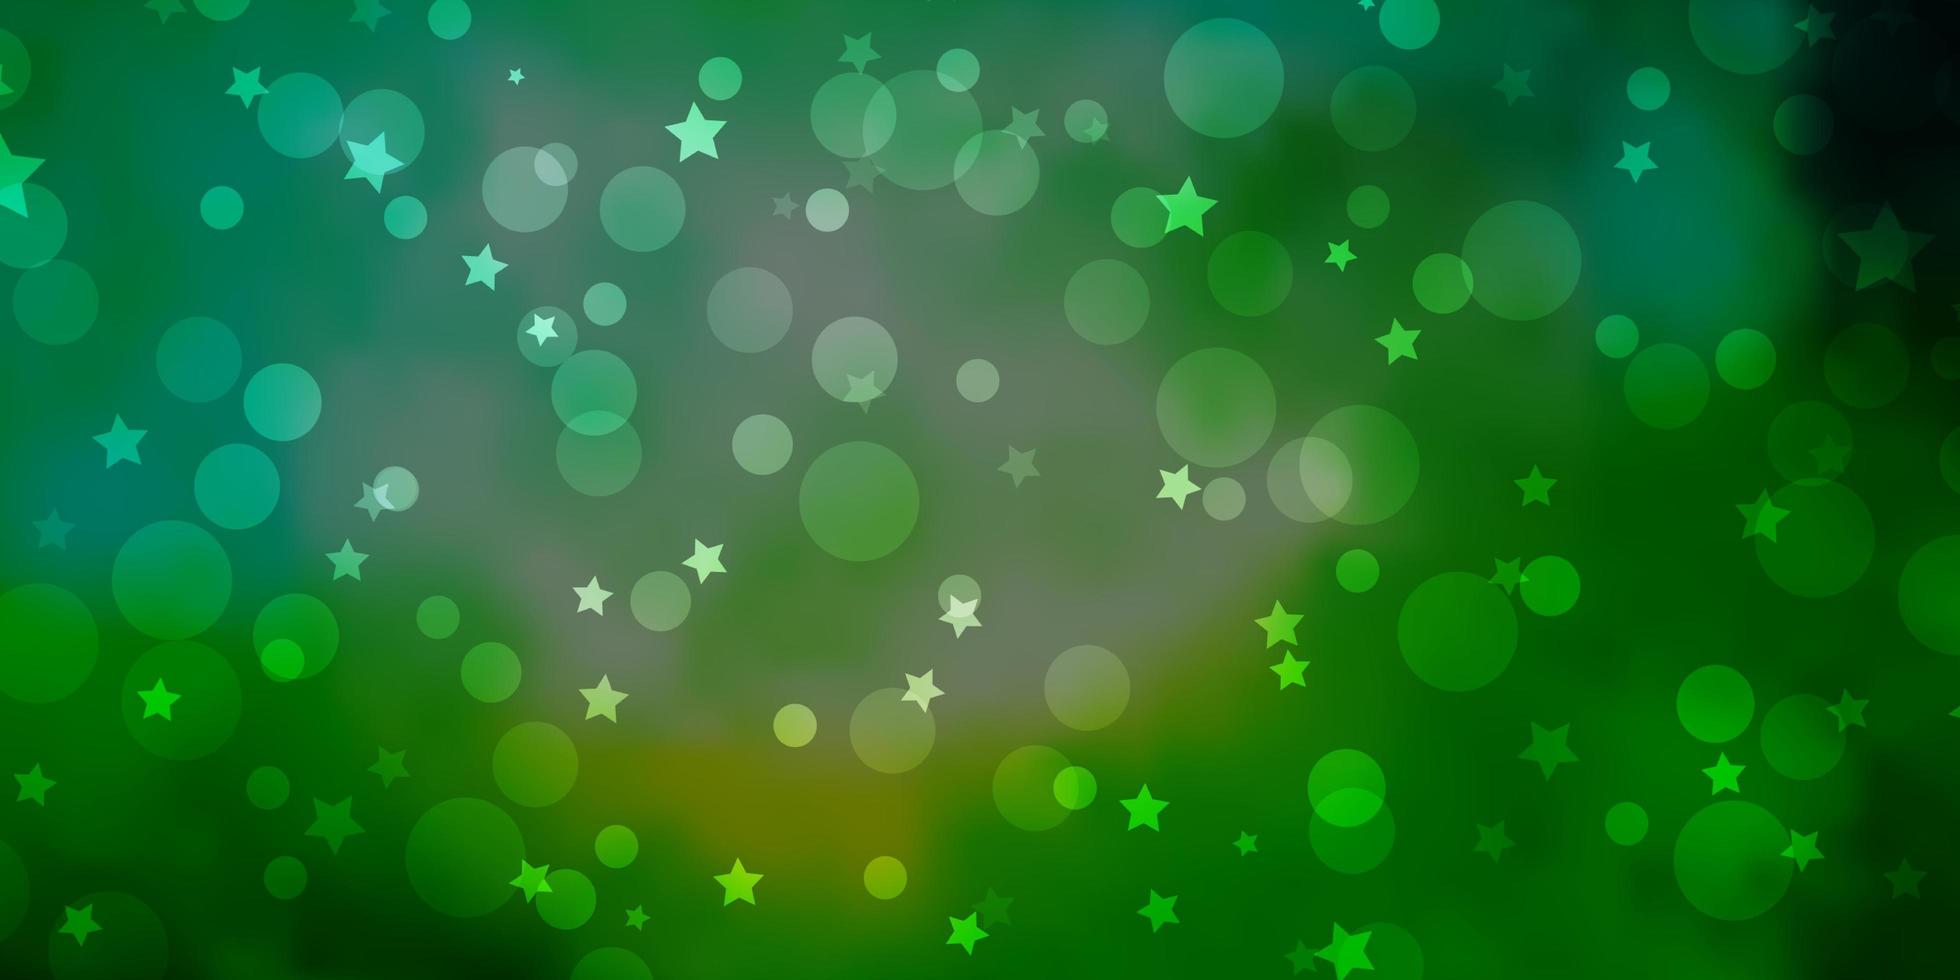 ljusblå grön vektor bakgrund med cirklar stjärnor abstrakt design i tonad stil med bubblor stjärnor konsistens för persienner gardiner